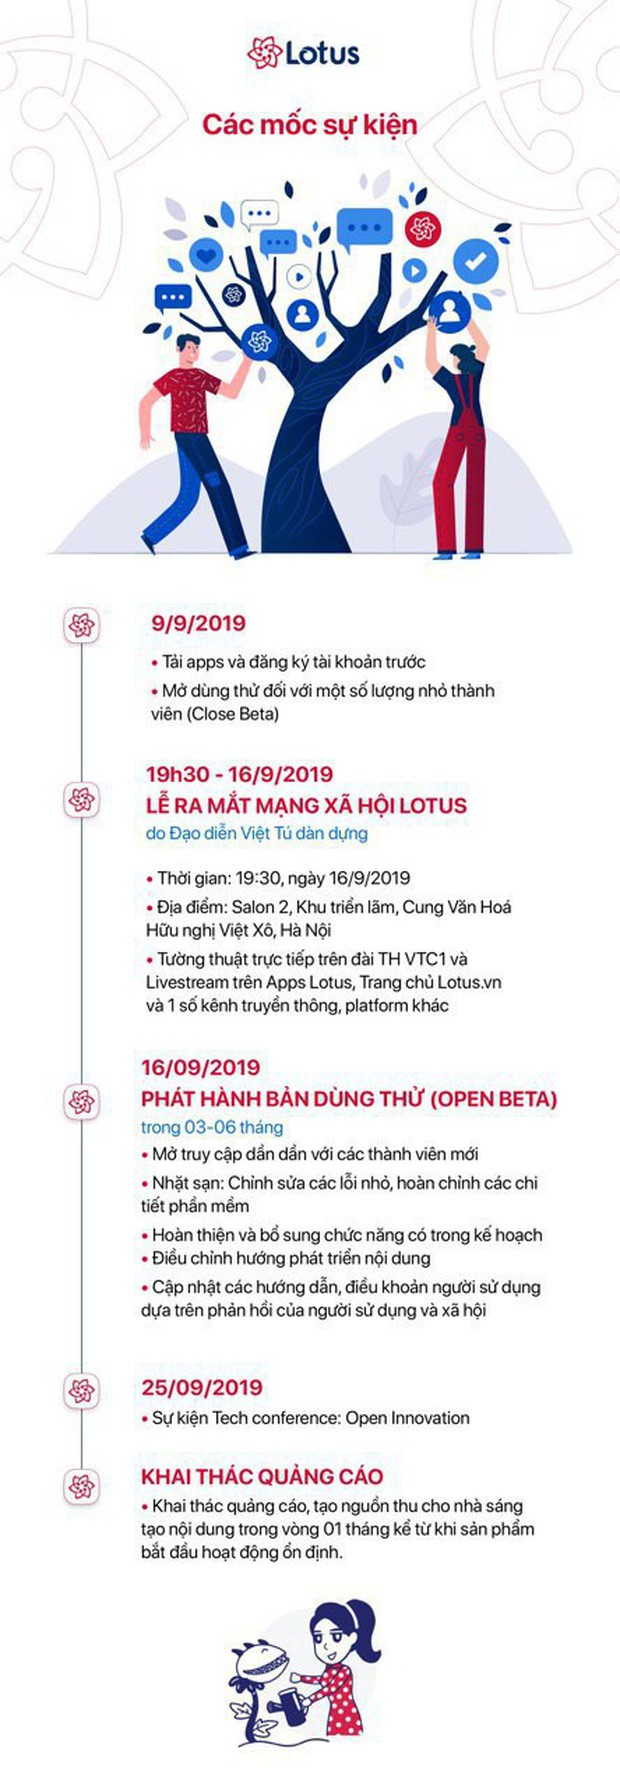 Đạo diễn Việt Tú hé lộ những thông tin nóng hổi về buổi ra mắt MXH Lotus: Đây sẽ là sự kiện công nghệ làm thỏa mãn tất cả mọi người! - Ảnh 8.